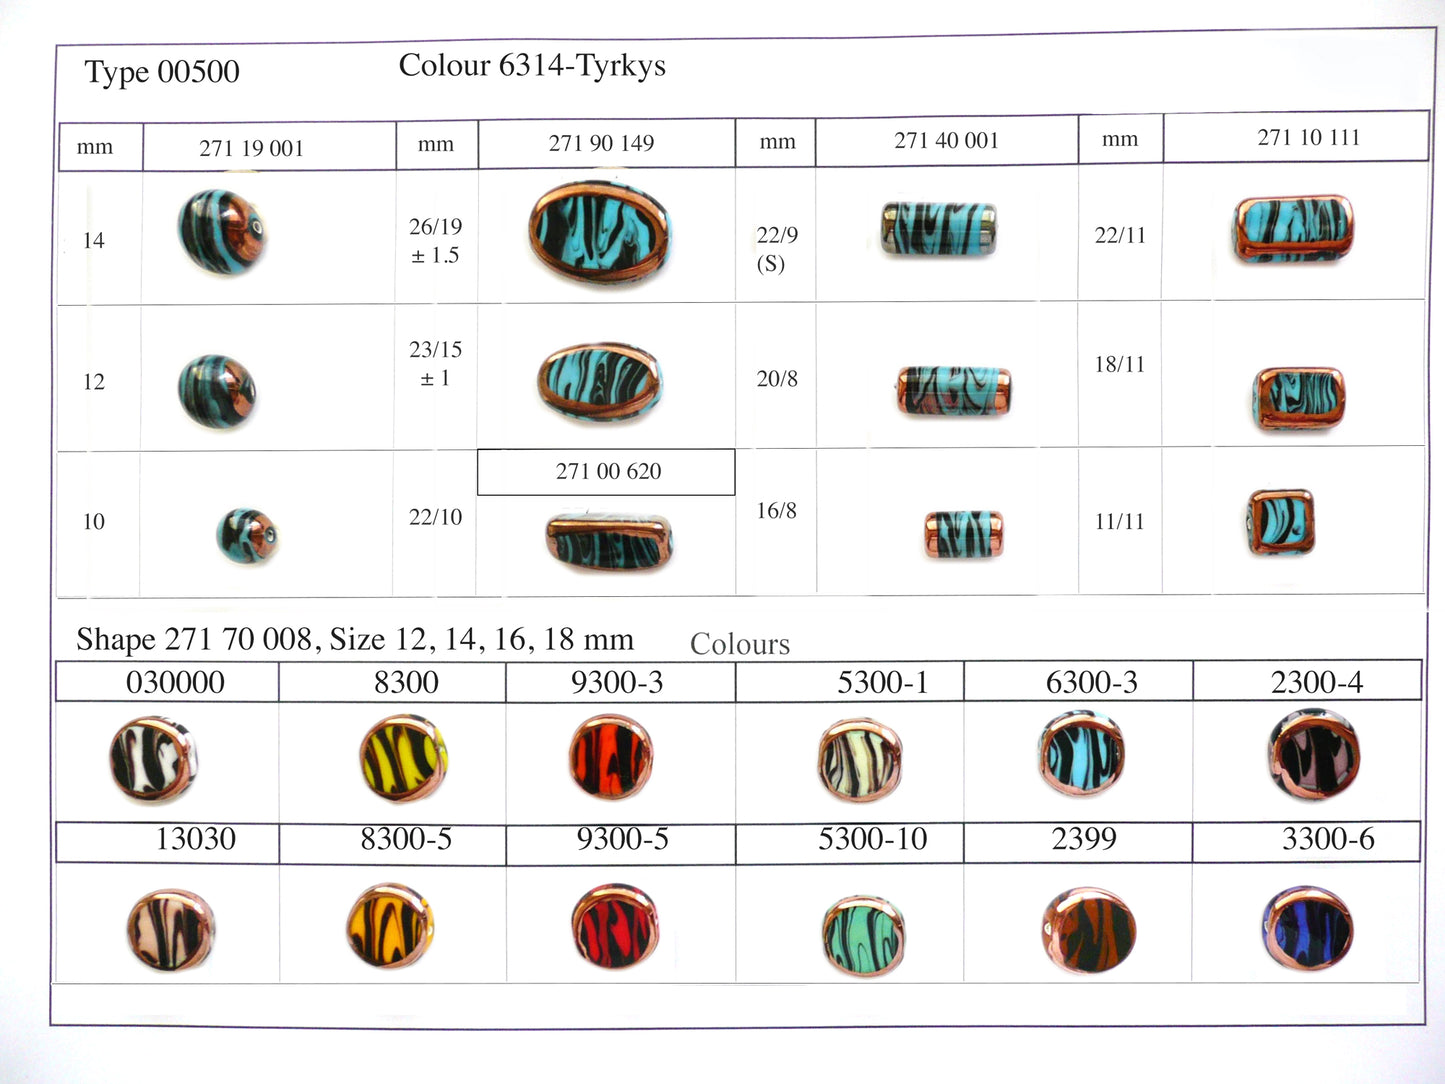 30 pcs Lampwork Beads 500 / Cylinder (271-40-001), Handmade, Preciosa Glass, Czech Republic